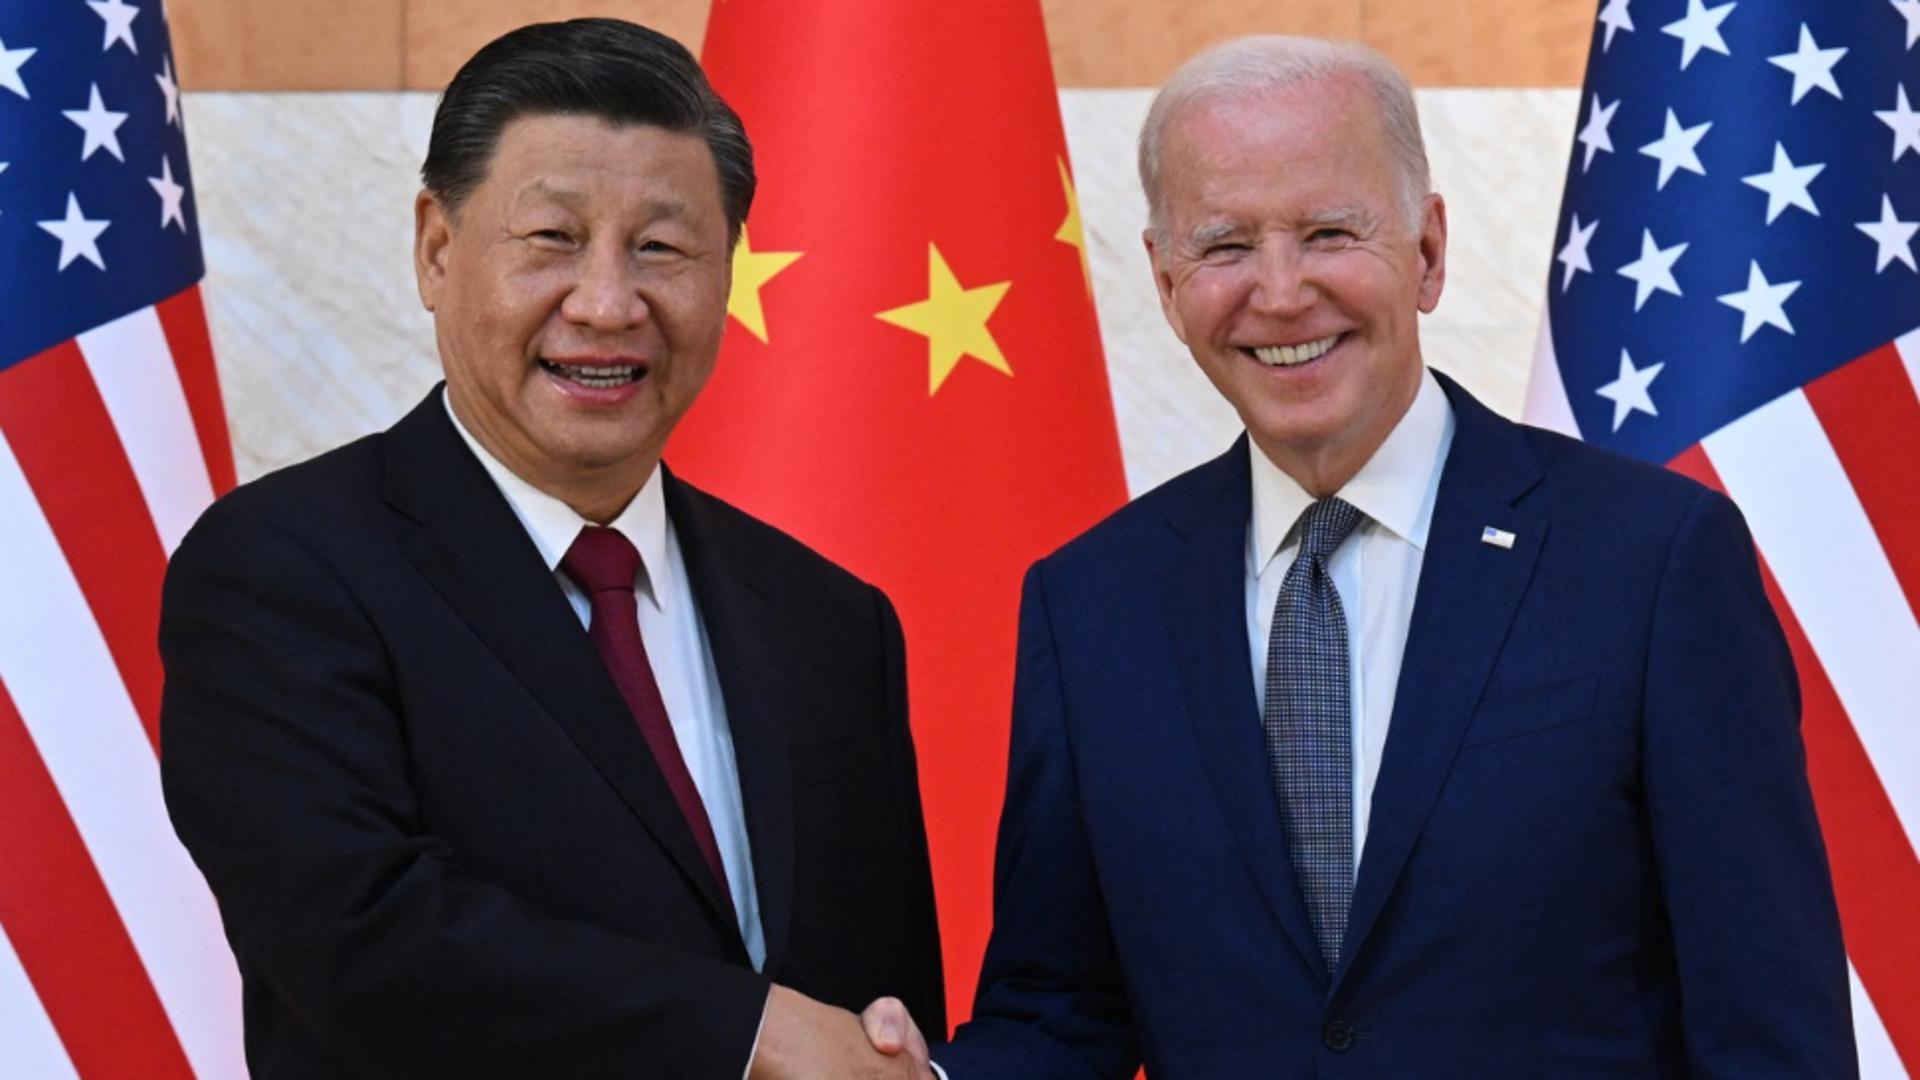 Întâlnirea care poate schimba soarta planetei. Joe Biden și Xi Jinping vor sta față în față